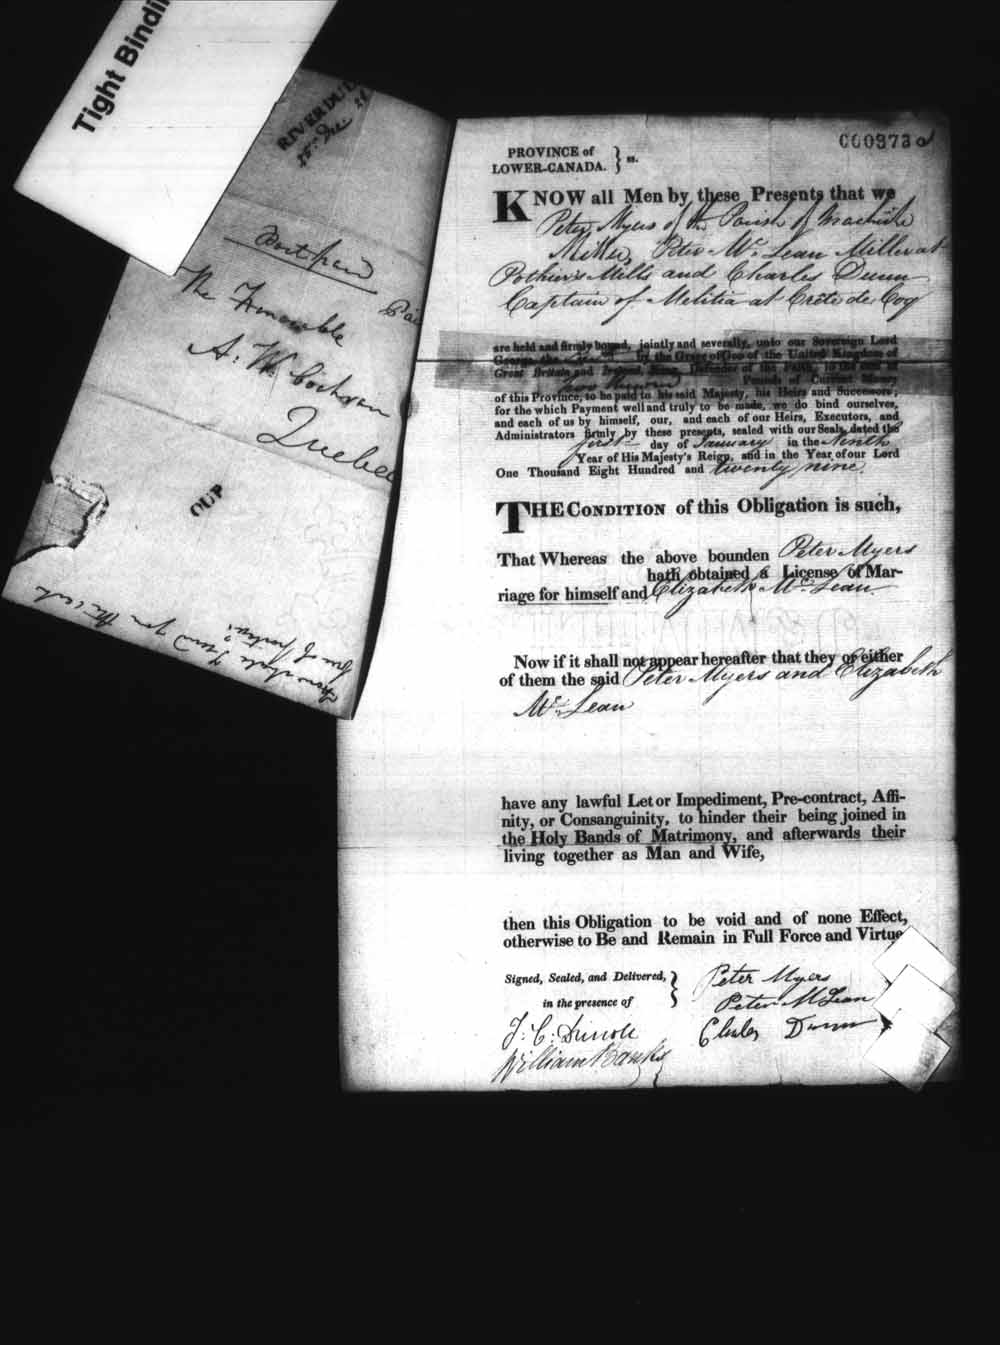 Page numérisé de Cautionnements de mariages pour le Haut-Canada et le Bas-Canada (1779-1865) pour l'image numéro: e008237084